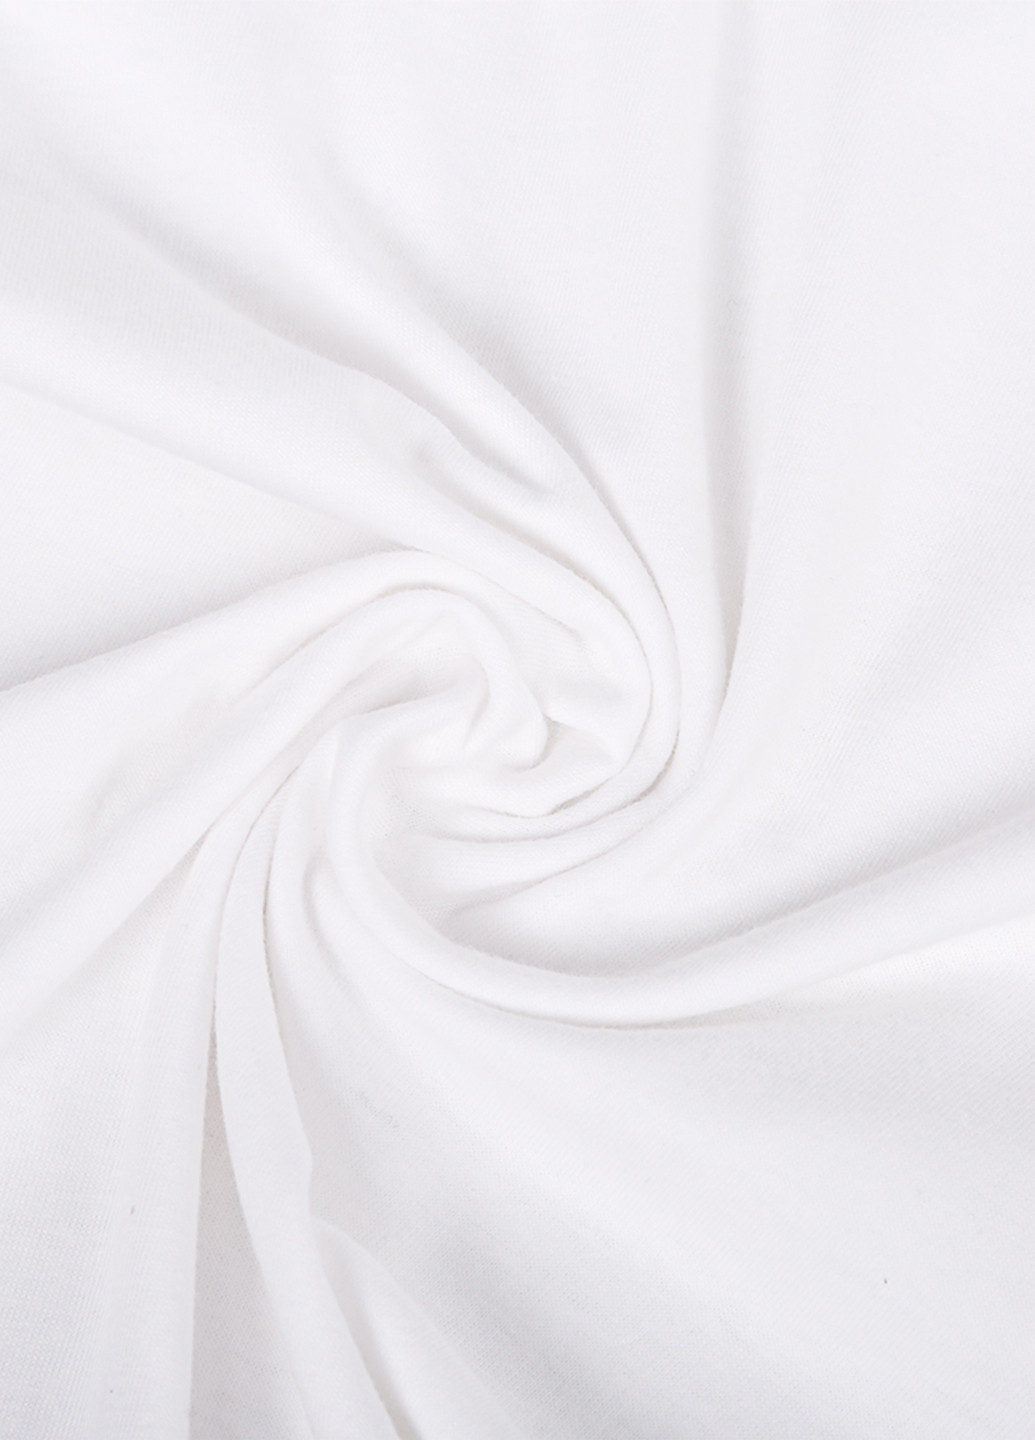 Біла демісезонна футболка дитяча пубг (pubg) білий (9224-1188) 164 см MobiPrint